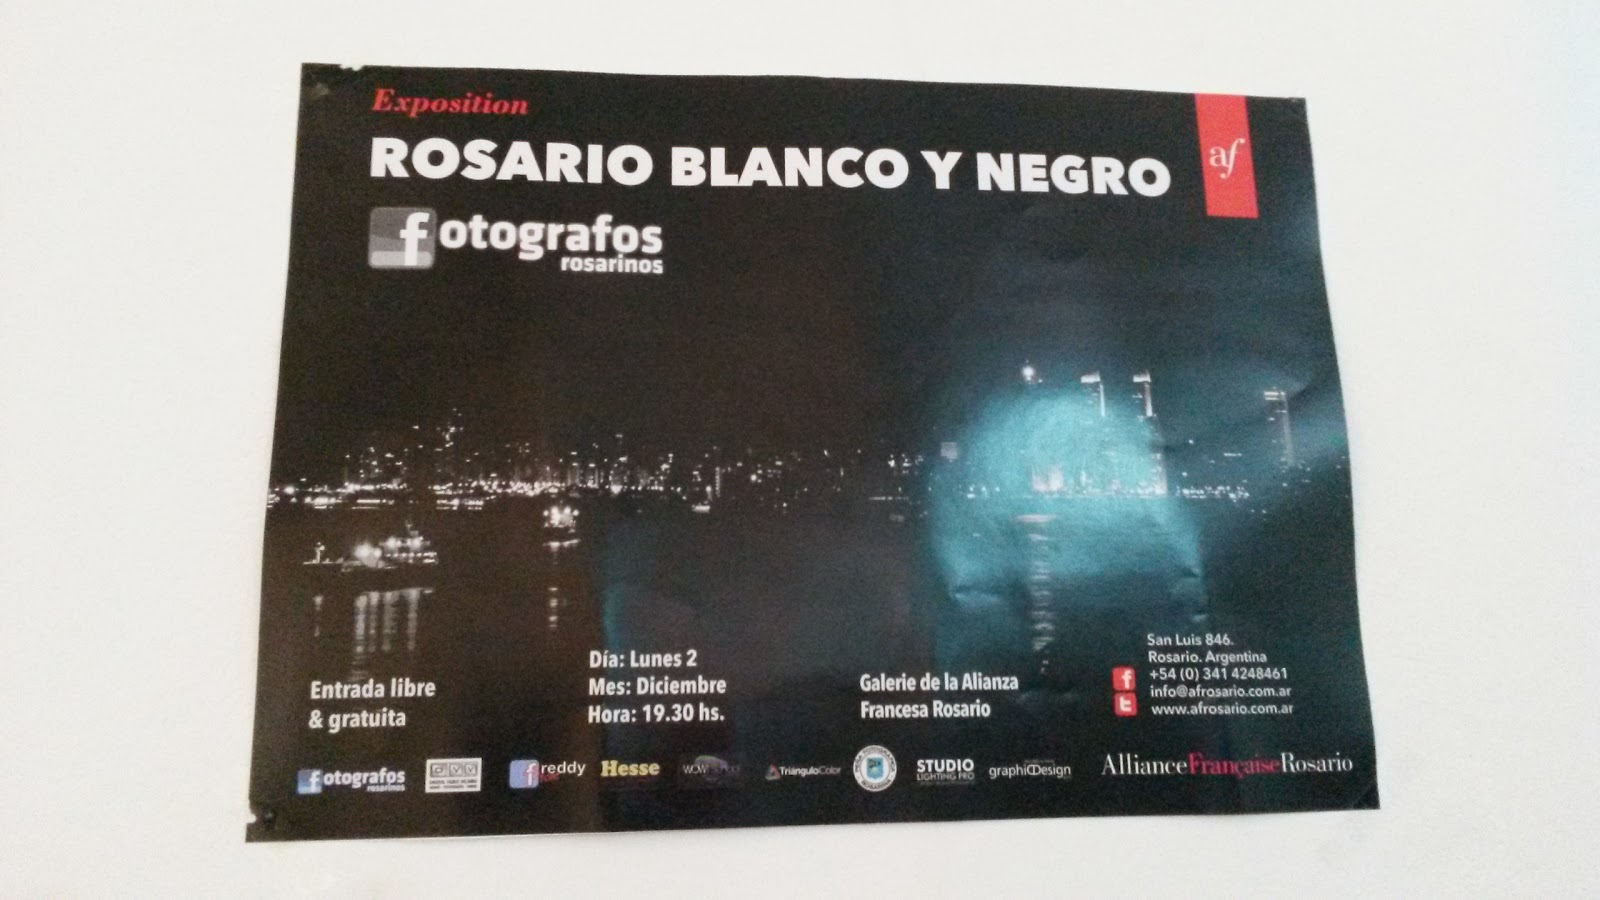 Rosario en blanco y negro, Colectivo de Fotógrafos de Rosario, Argentina, Alianza Francesa, Elisa N, Blog de Viajes, Lifestyle, Travel